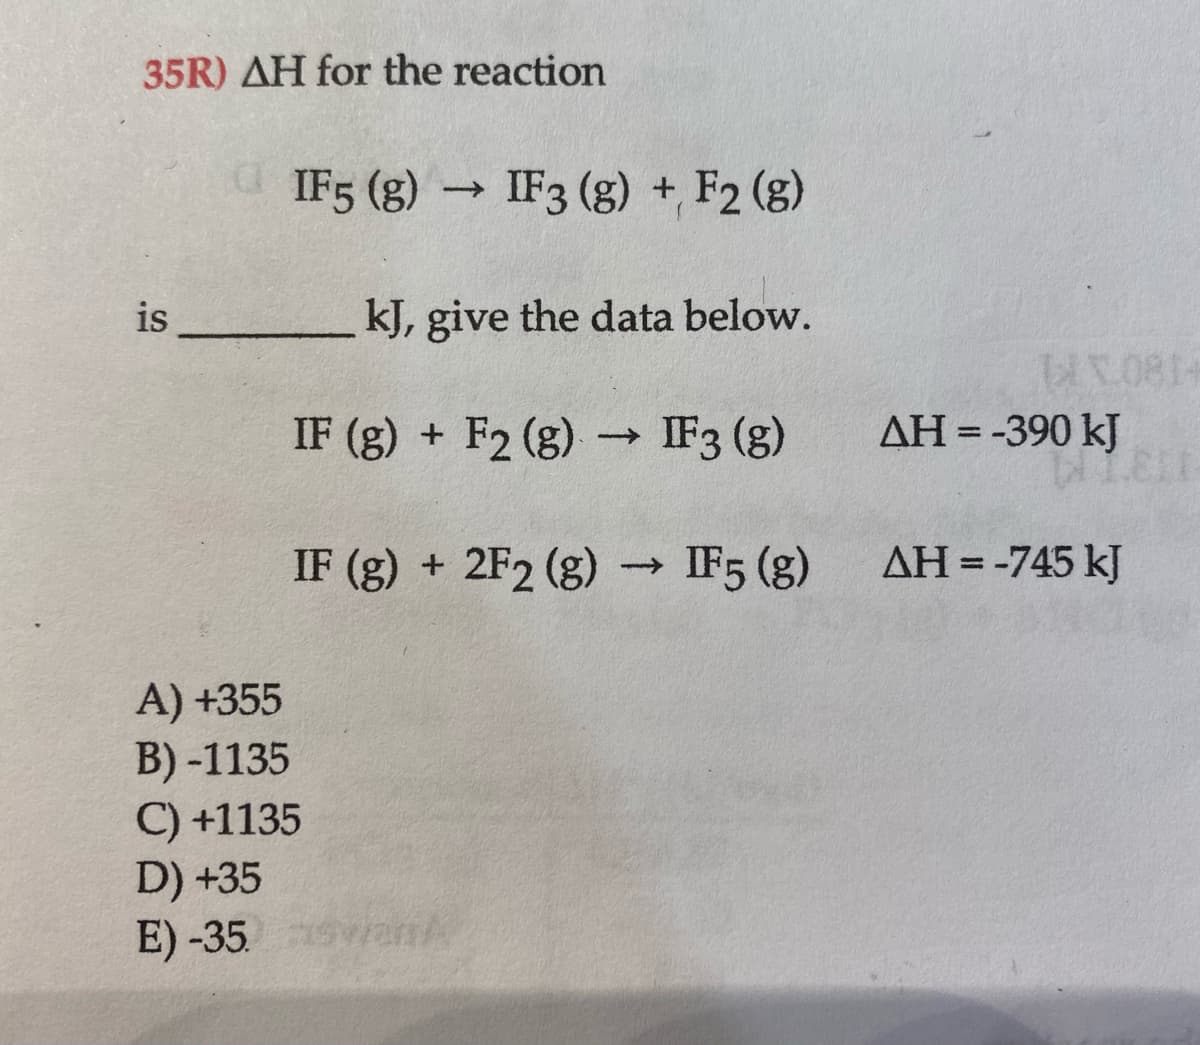 35R) AH for the reaction
IF5 (g) → IF3 (g) + F2 (g)
is
kJ, give the data below.
IF (g) + F2 (g) → IF3 (g)
AH = -390 kJ
IF (g) + 2F2 (g) → IF5 (g)
AH =-745 kJ
A) +355
B) -1135
C) +1135
D) +35
E) -35. vanA
